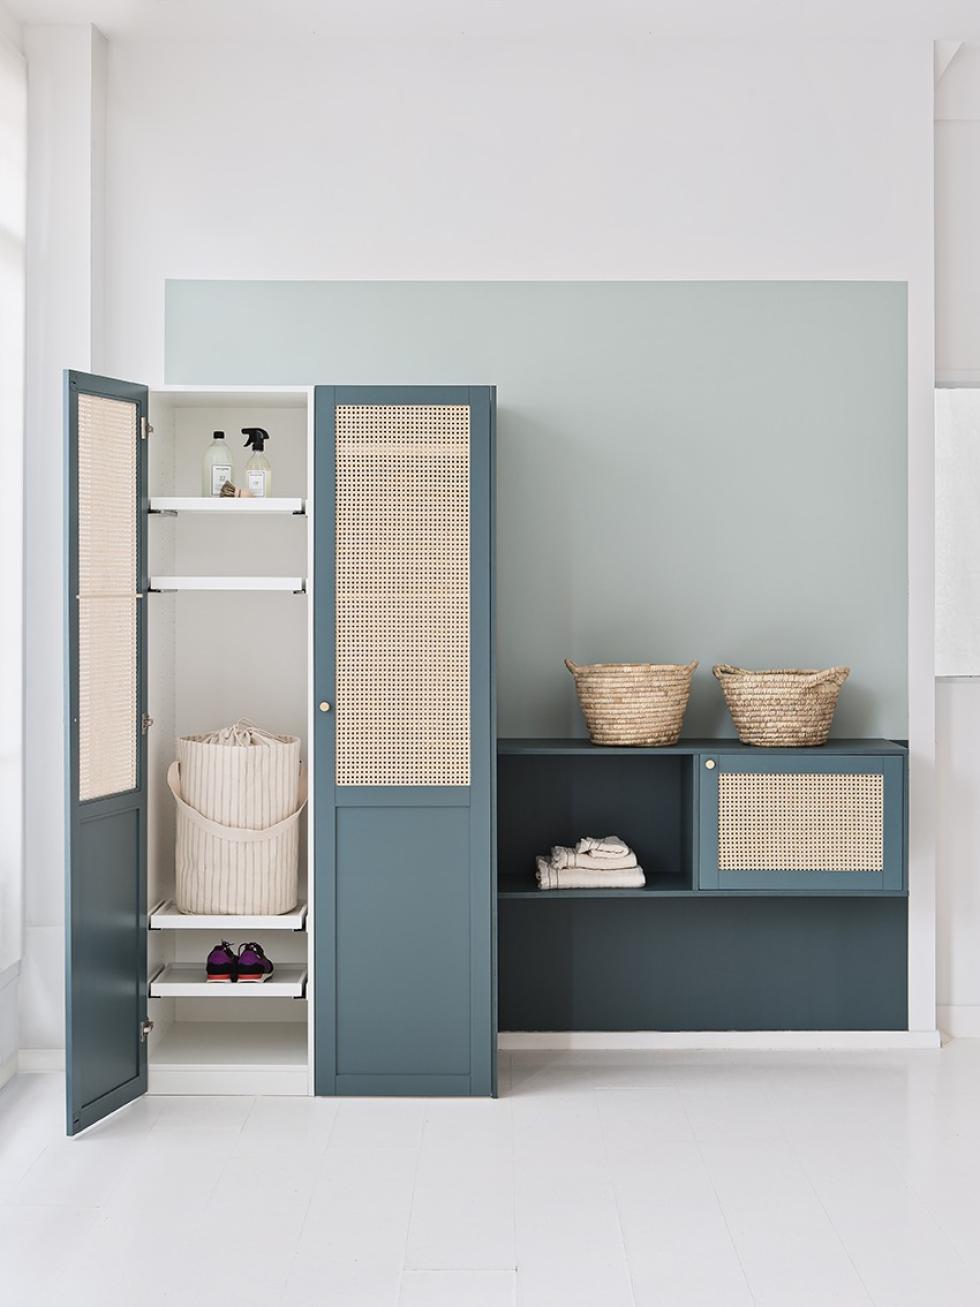 Kleiderschrank mit Fronten in “Bleu paon” im Rattan-Design, zusammengestellt aus Pax-Korpussen und Metod-Korpussen von Ikea.